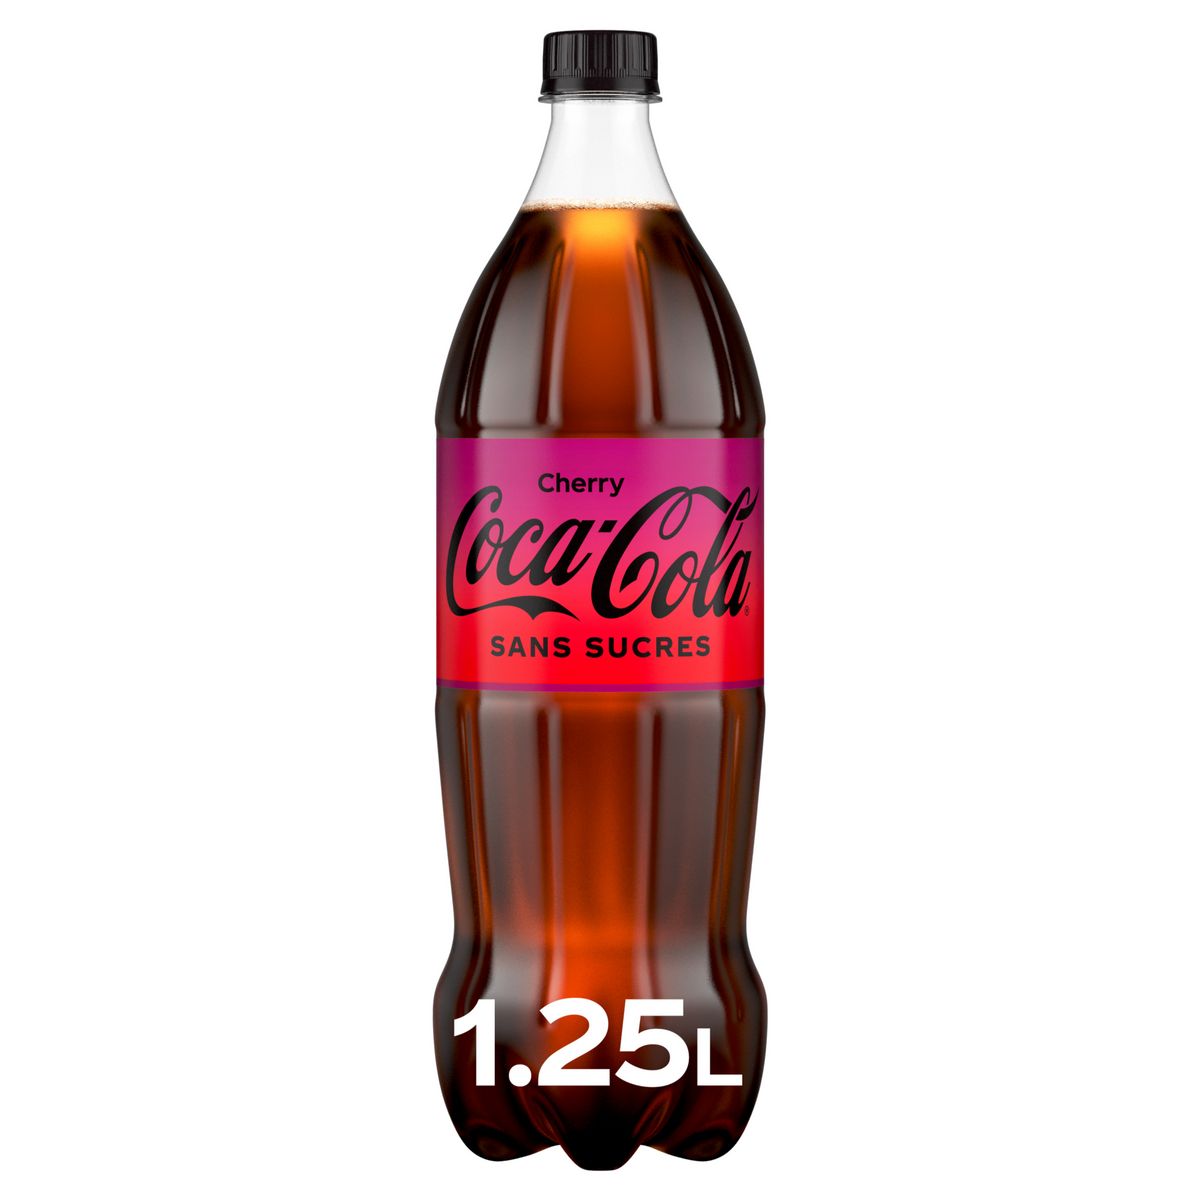 COCA-COLA Cherry boisson gazeuse aux extraits végétaux goût cerise 1,25l